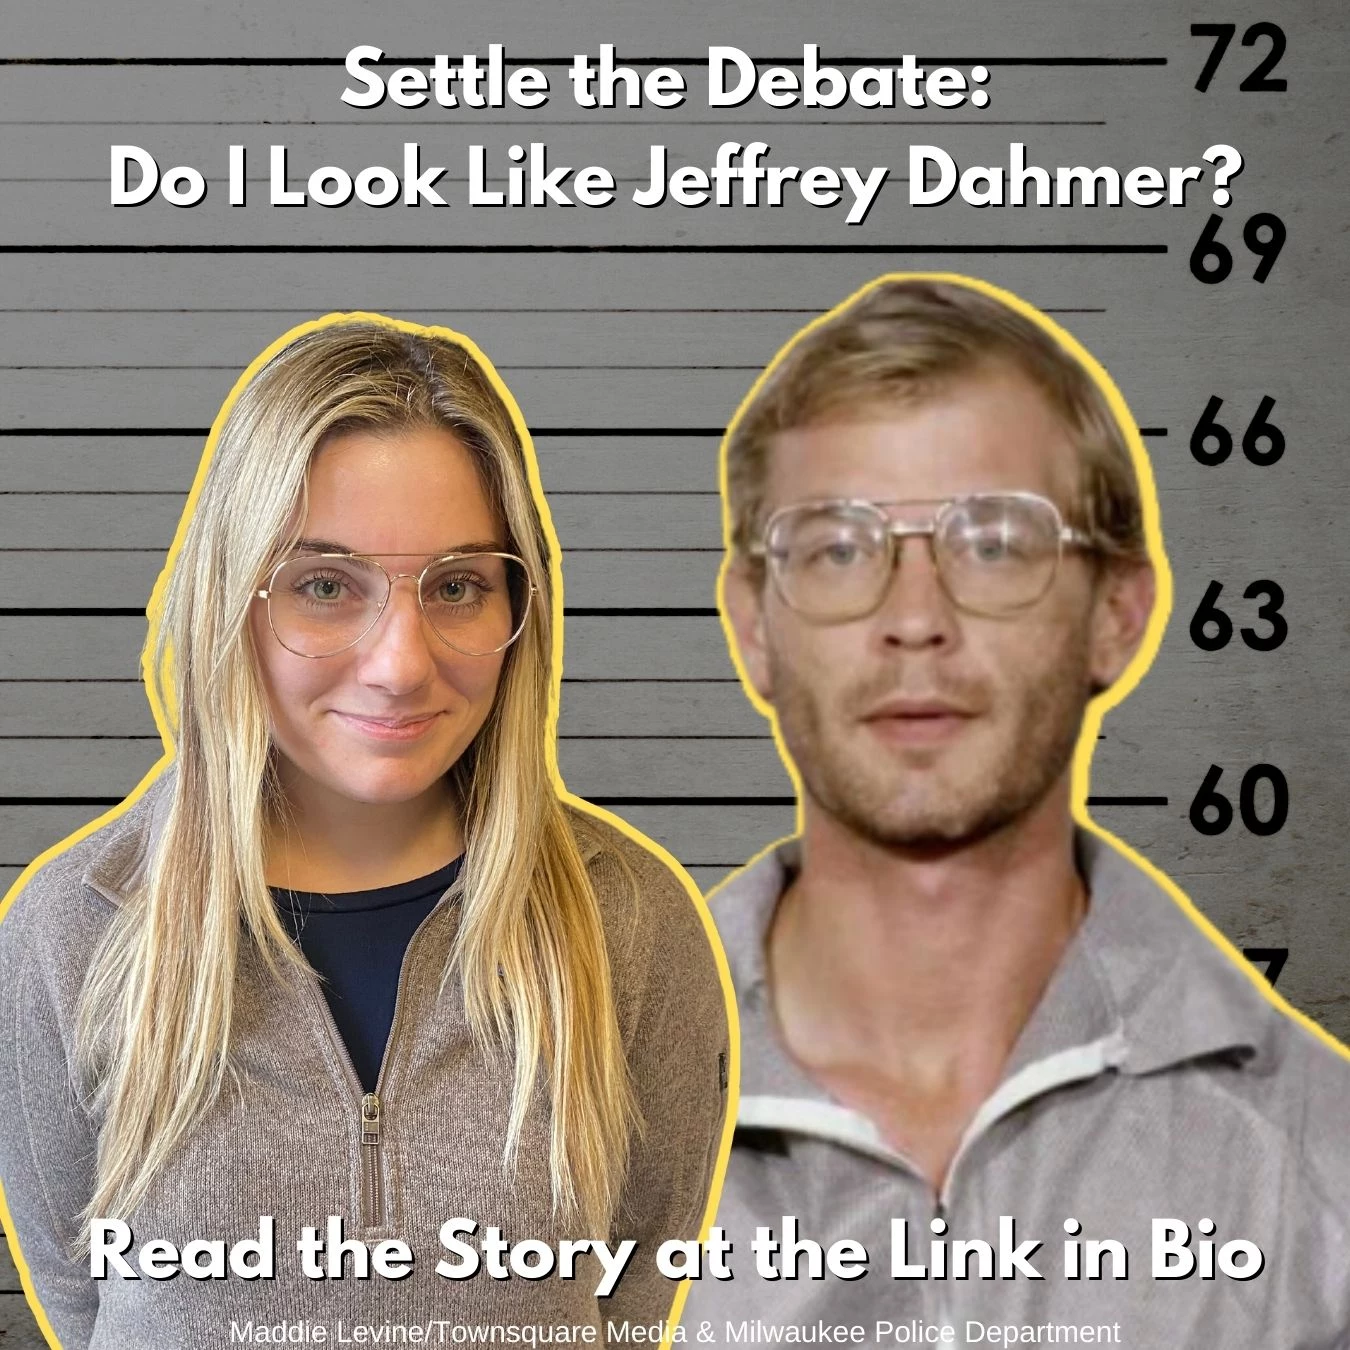 Settle the Debate: Does Maddie Levine Look Like Jeffrey Dahmer?